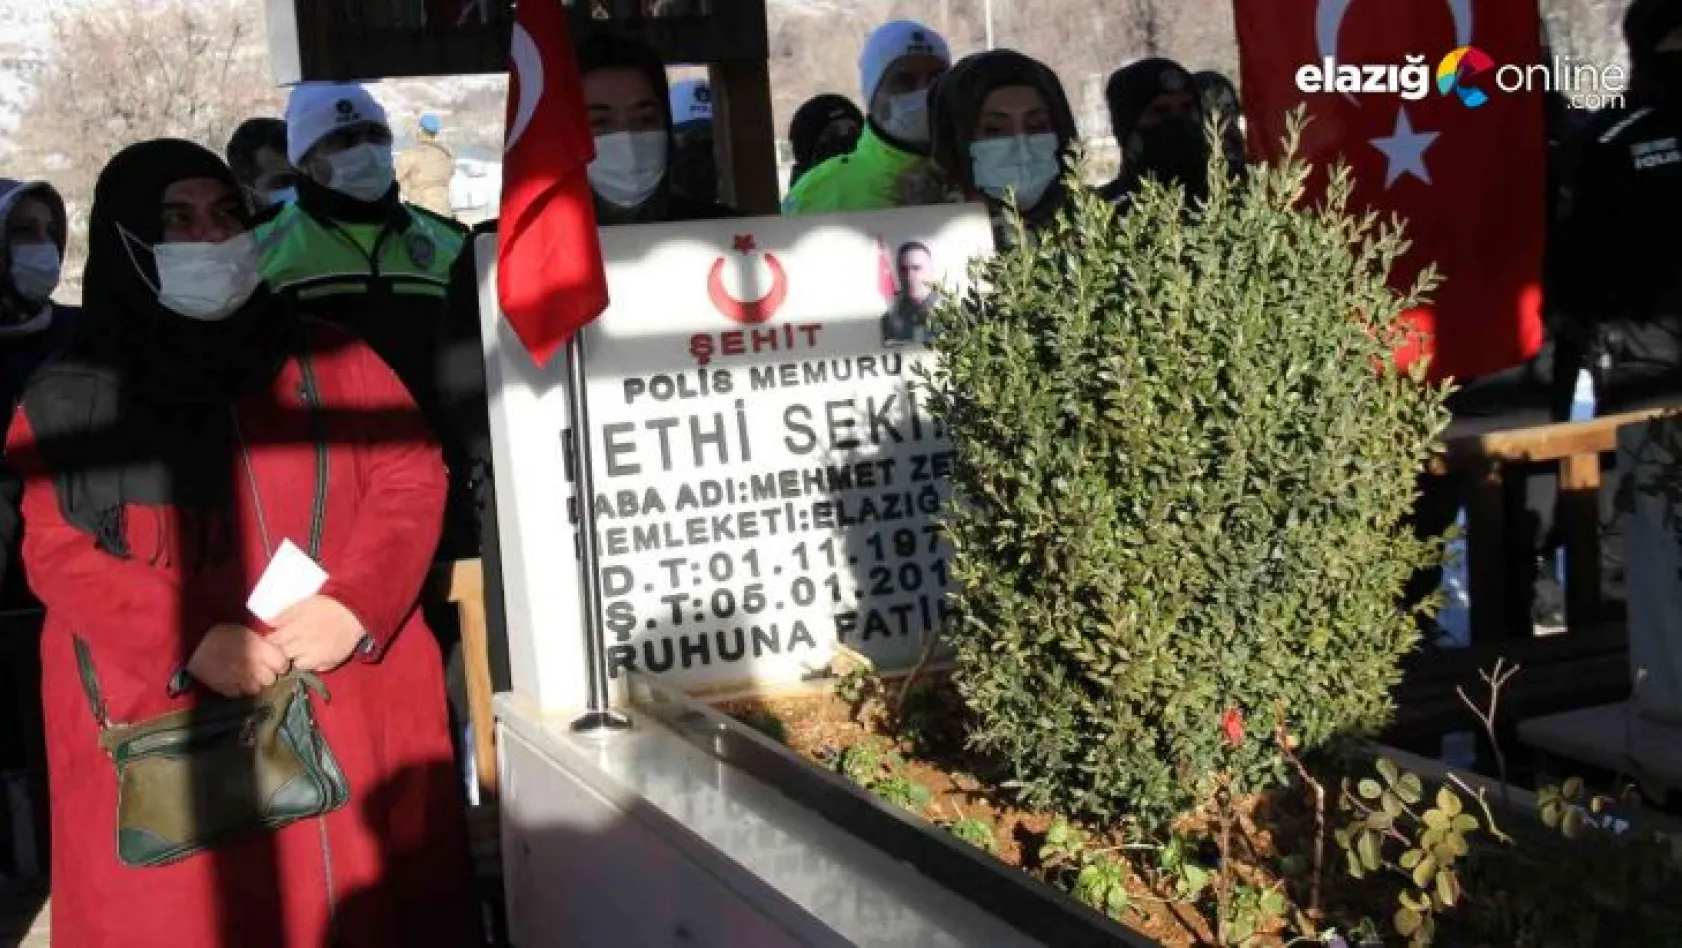 Şehit polis Fethi Sekin, vefatının 5. yılında kabri başında anıldı